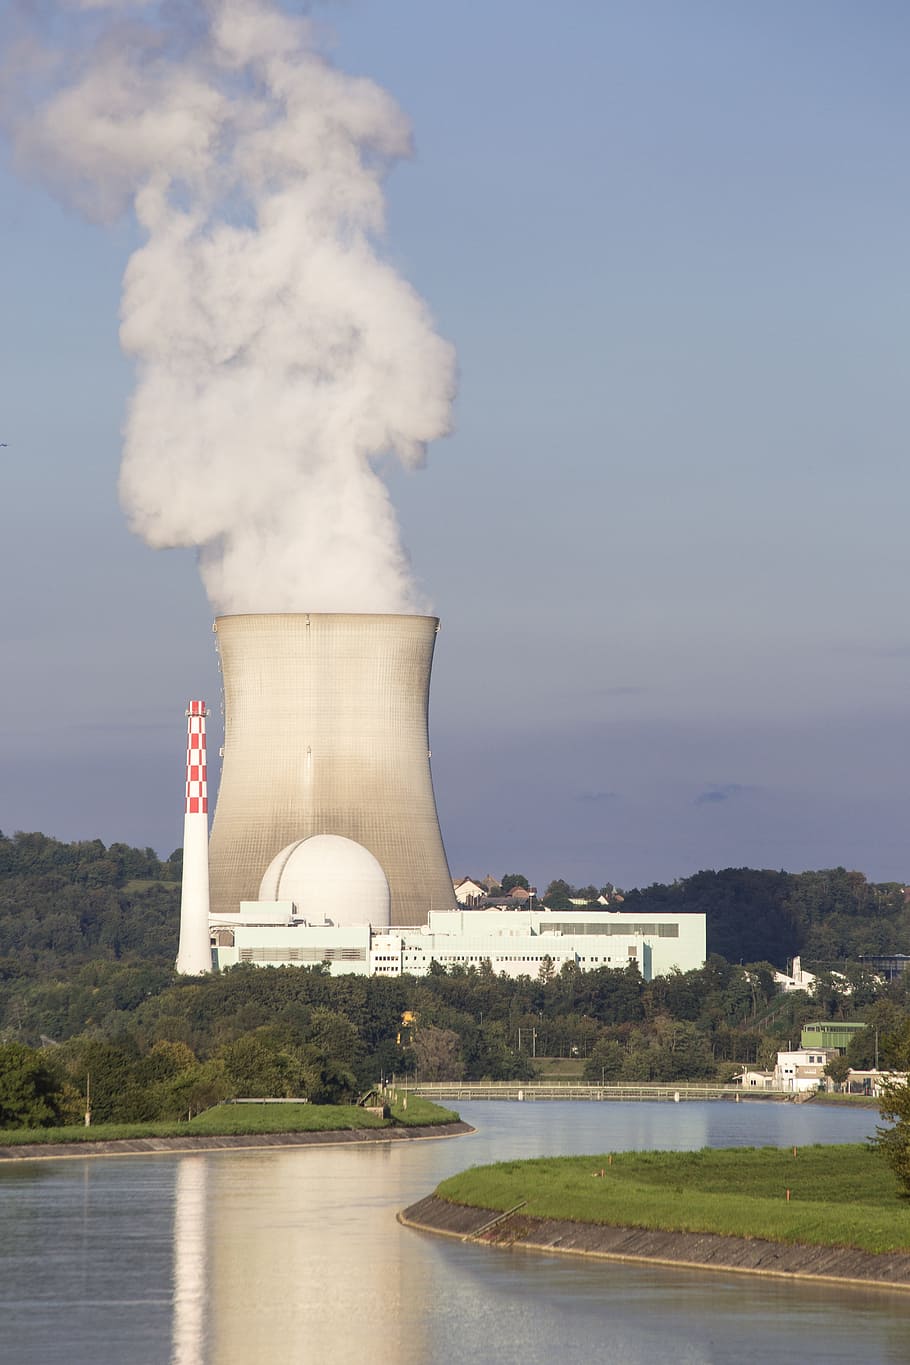 원자력 발전소, 발전소, 원자력, 전기, 에코 전기, 에너지 혁명, 원자, 원자로, 에너지, 흐름